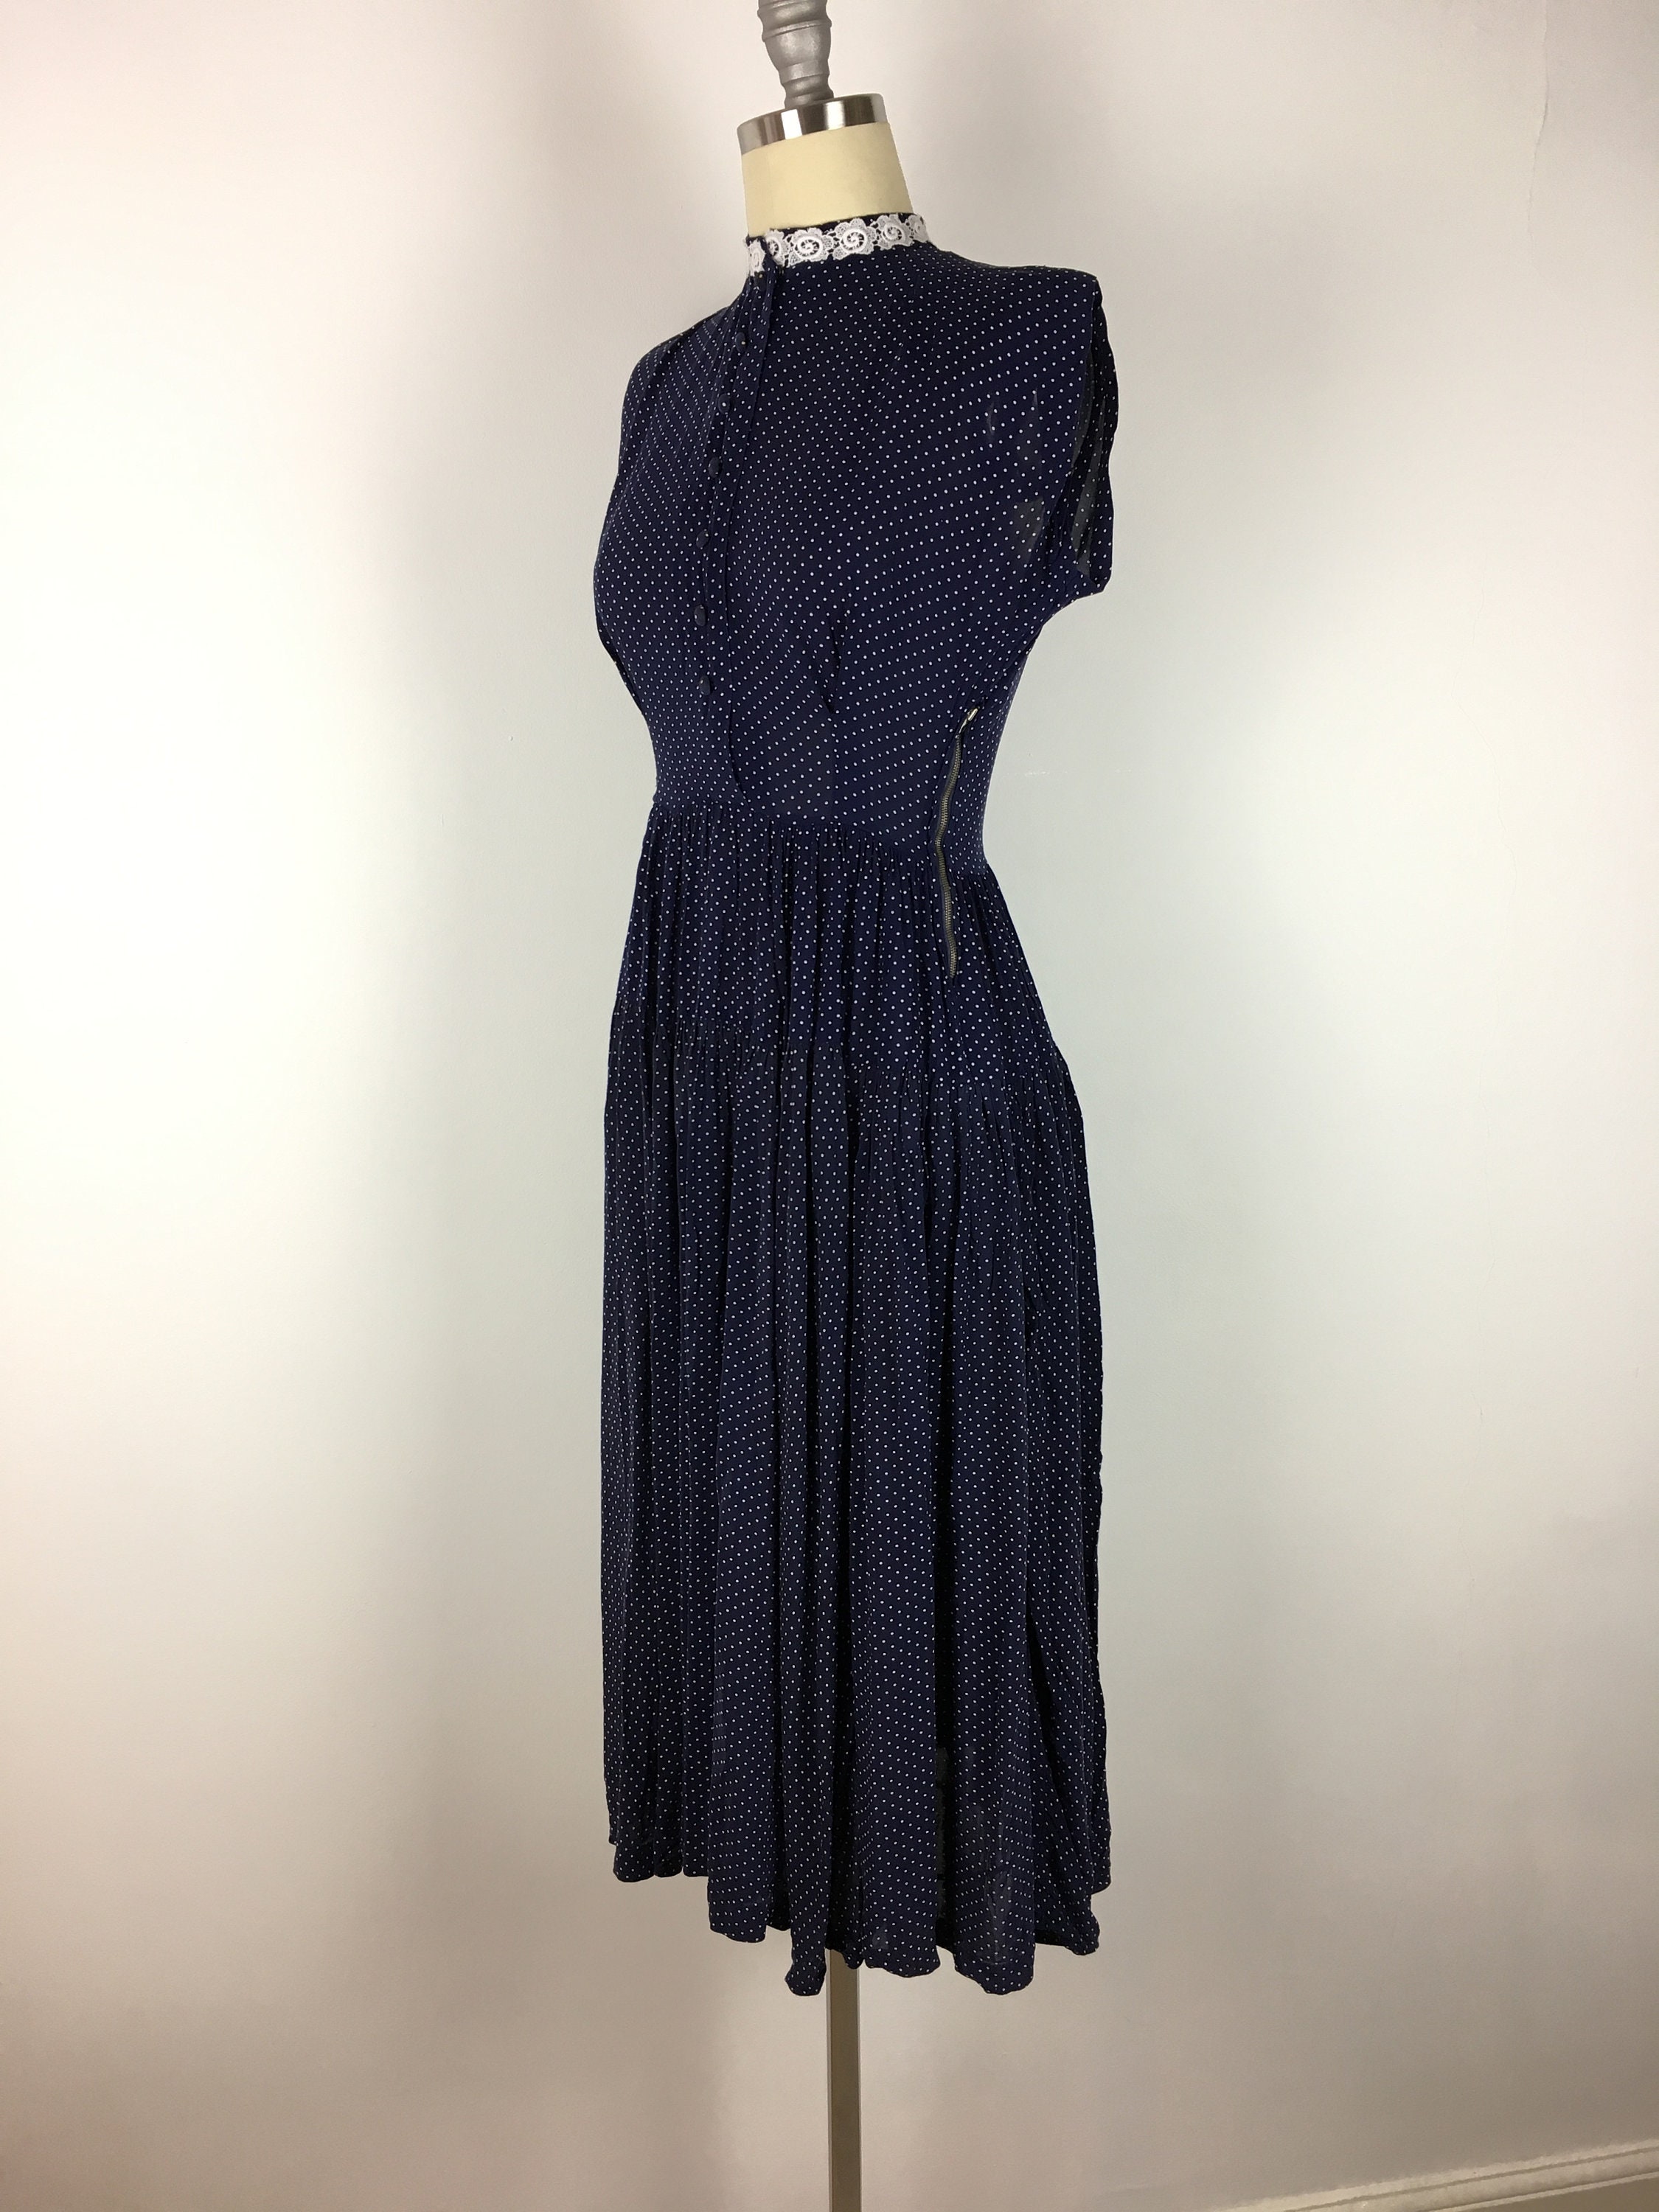 Vintage 1930s Dress 30s Navy Blue Polka Dot Silk Rayon Dress - Etsy UK